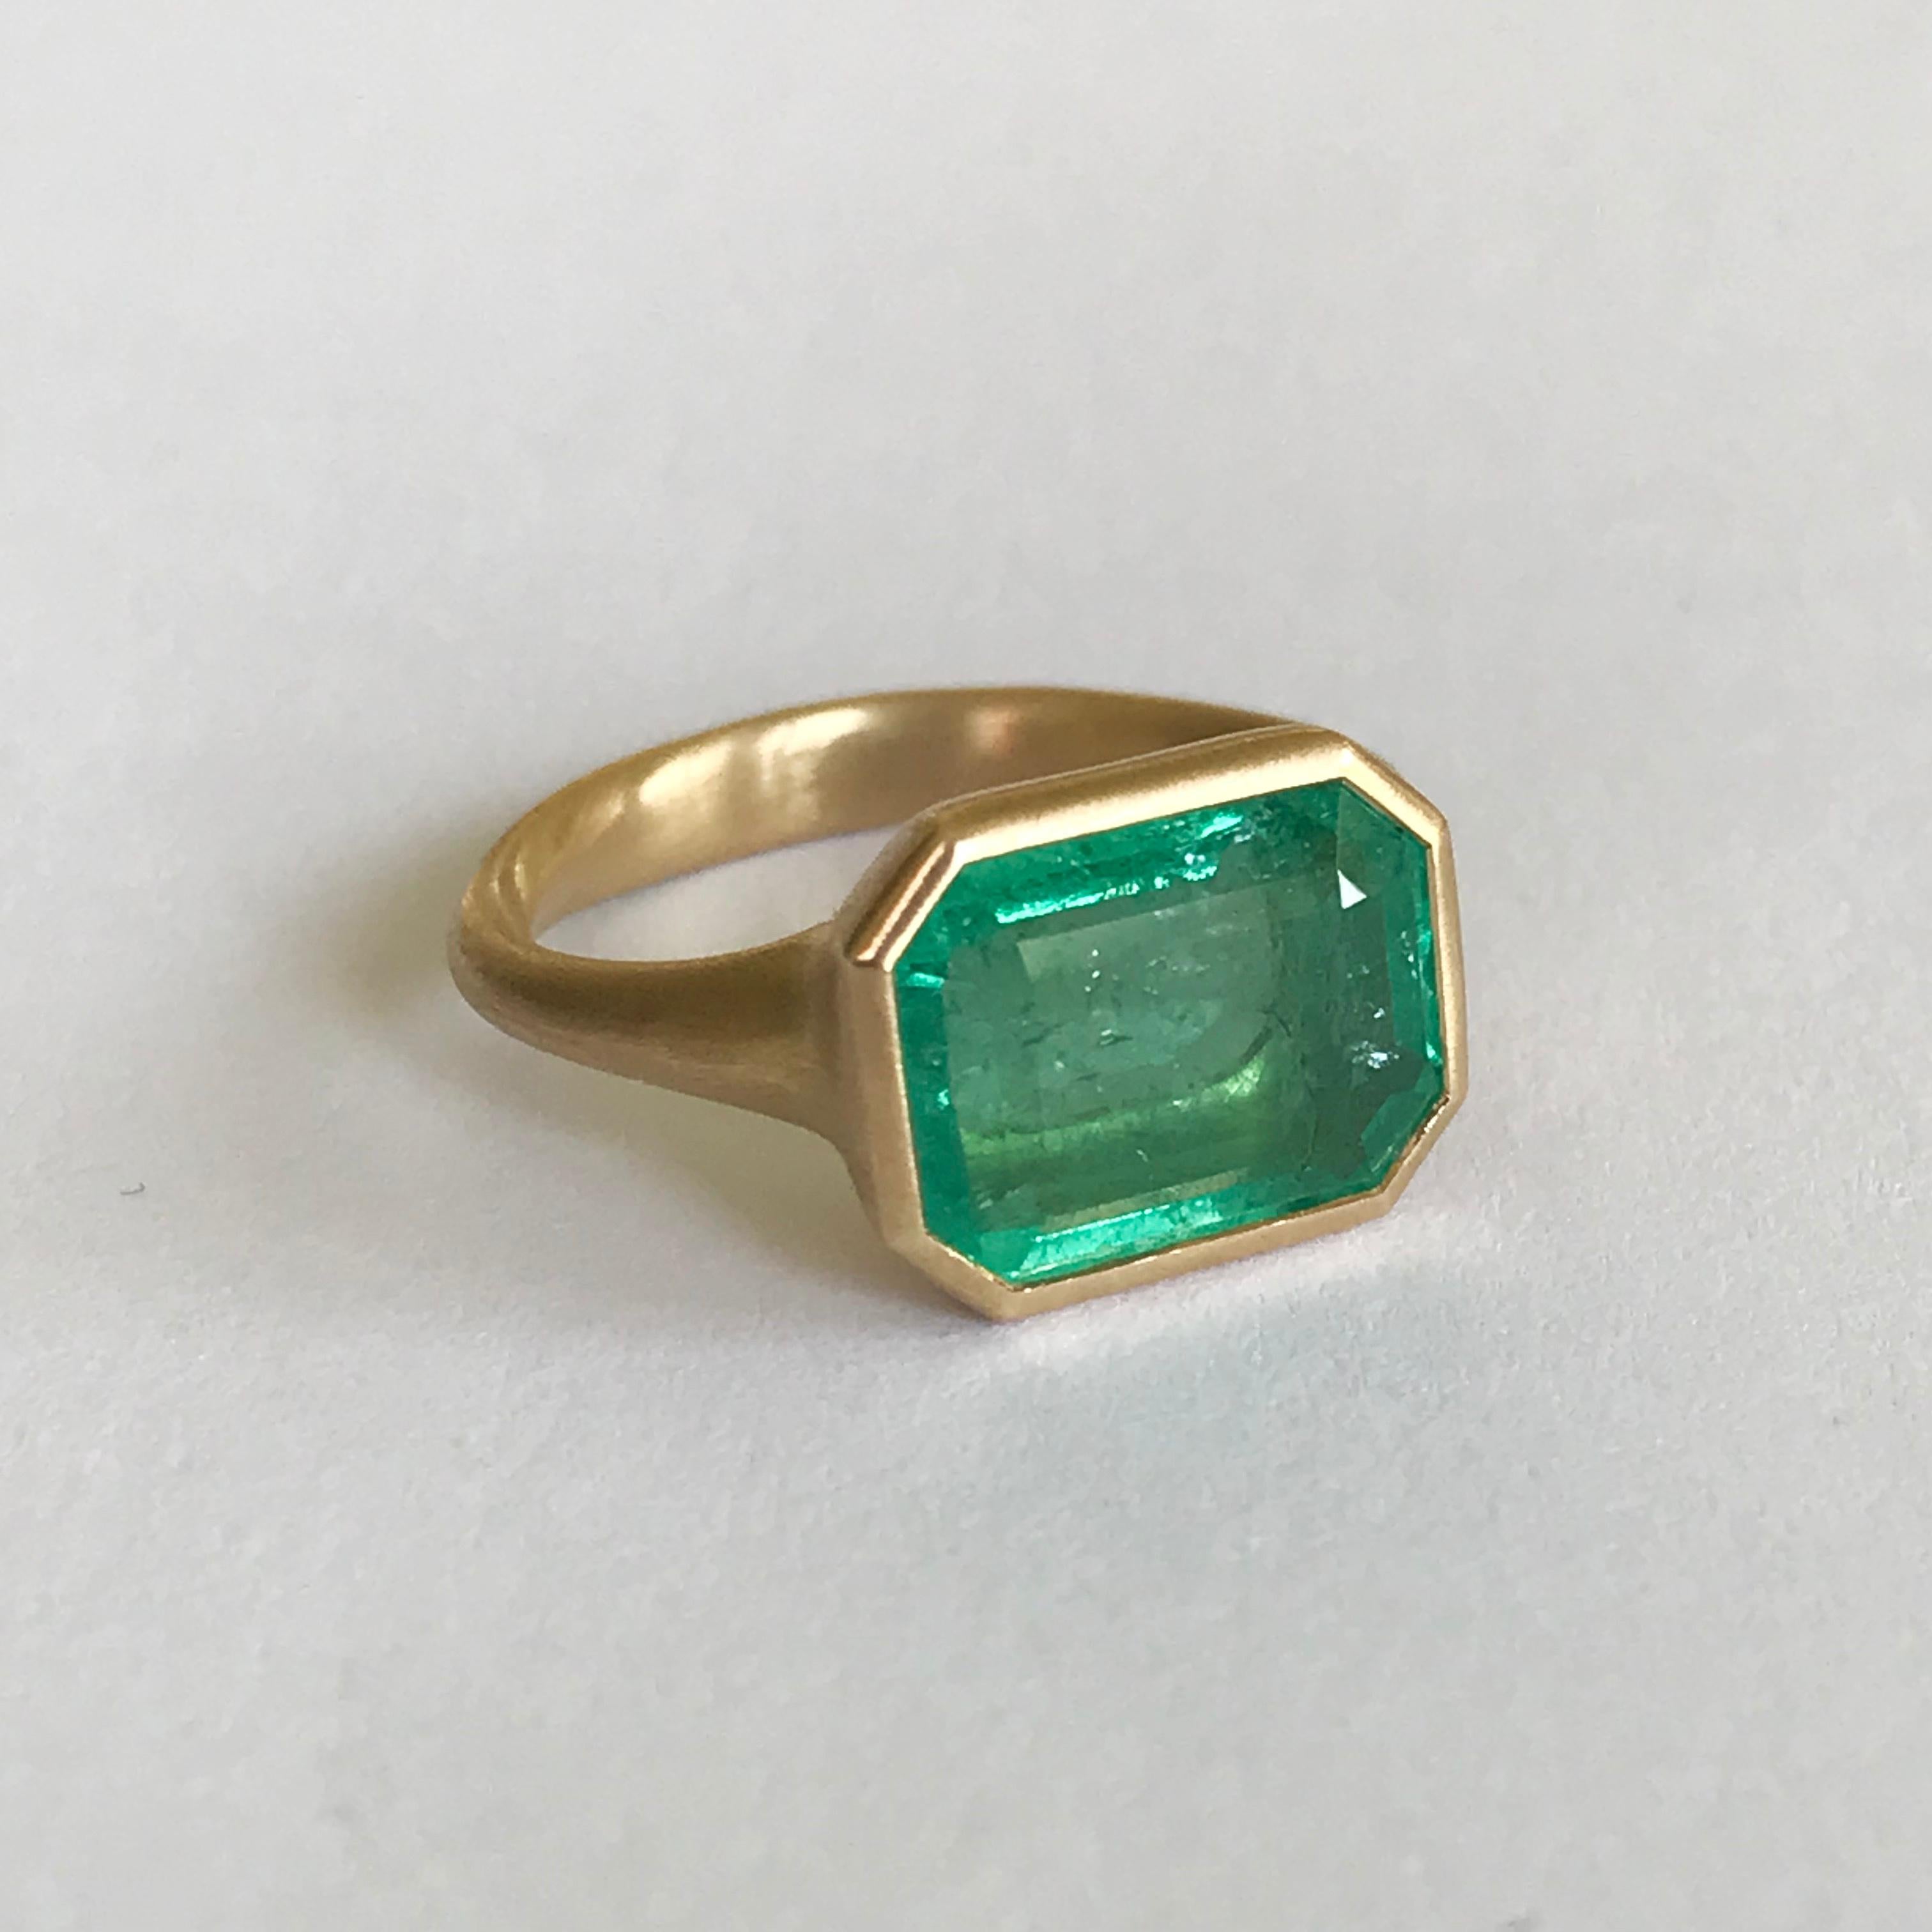 Dalben 4, 3 Carat Emerald Yellow Gold Ring 2